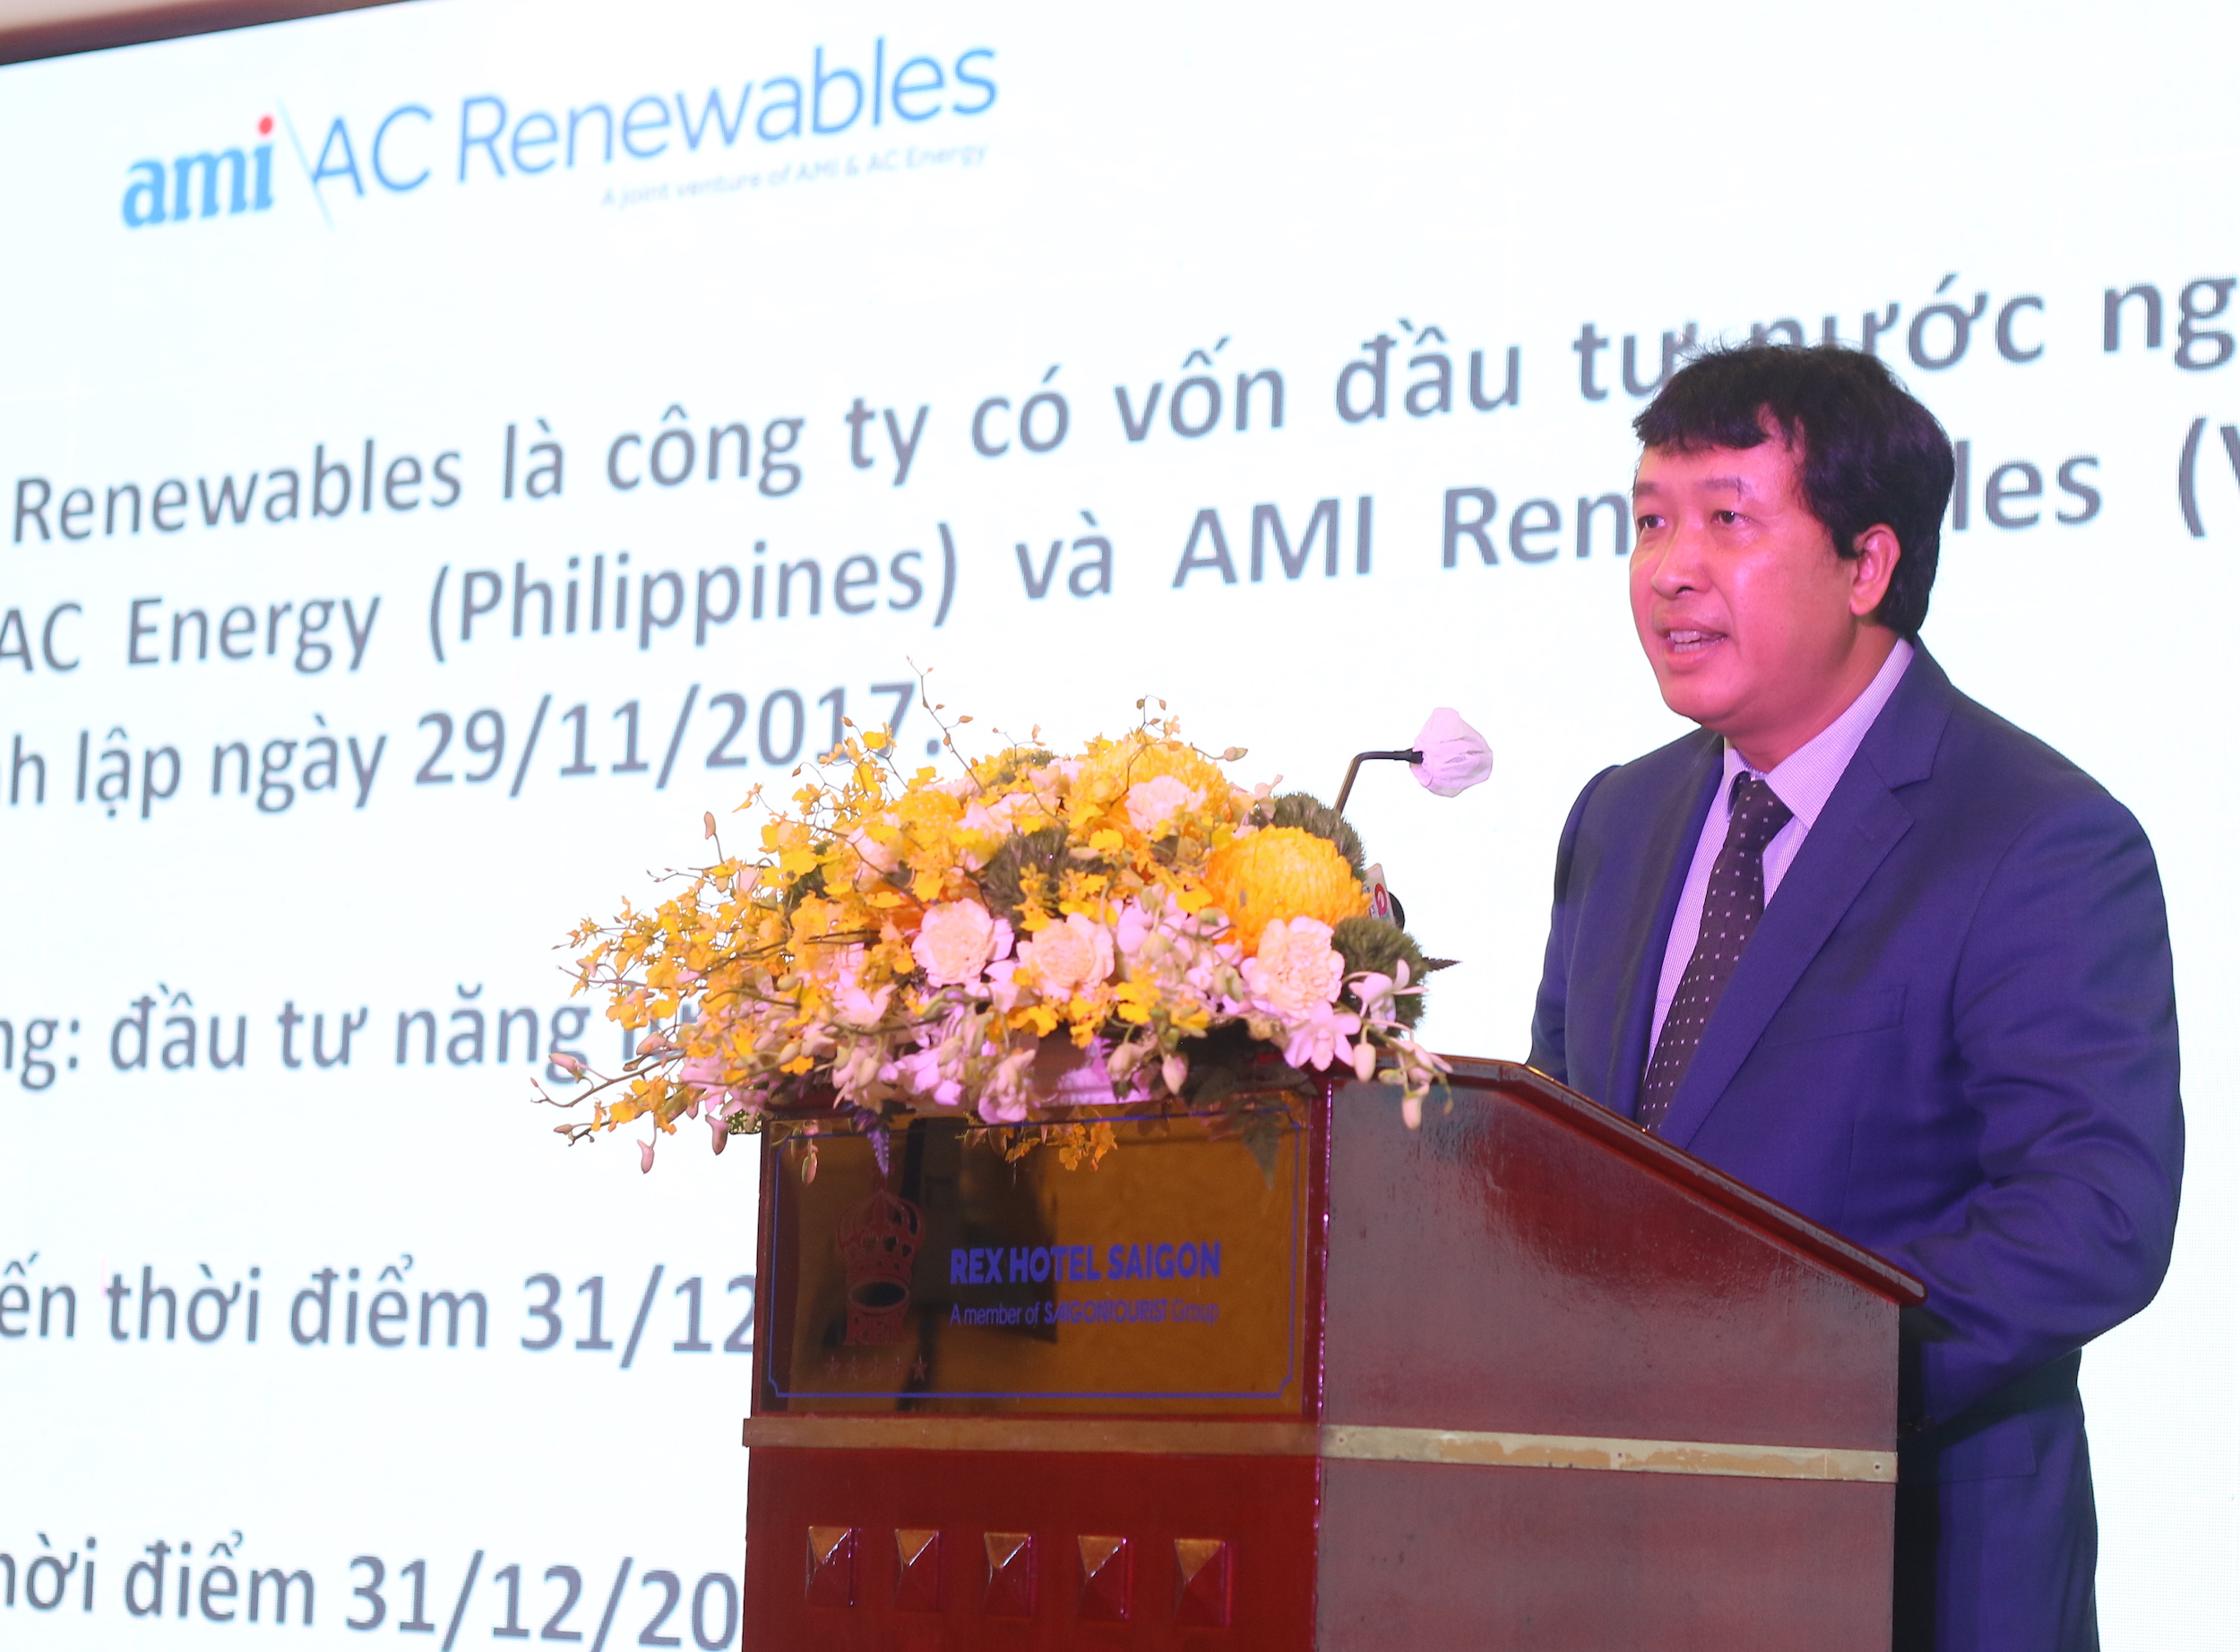 Ông Nguyễn Nam Thắng, Tổng giám đốc công ty AMI AC Renewables. (Ảnh: Lê Toàn).